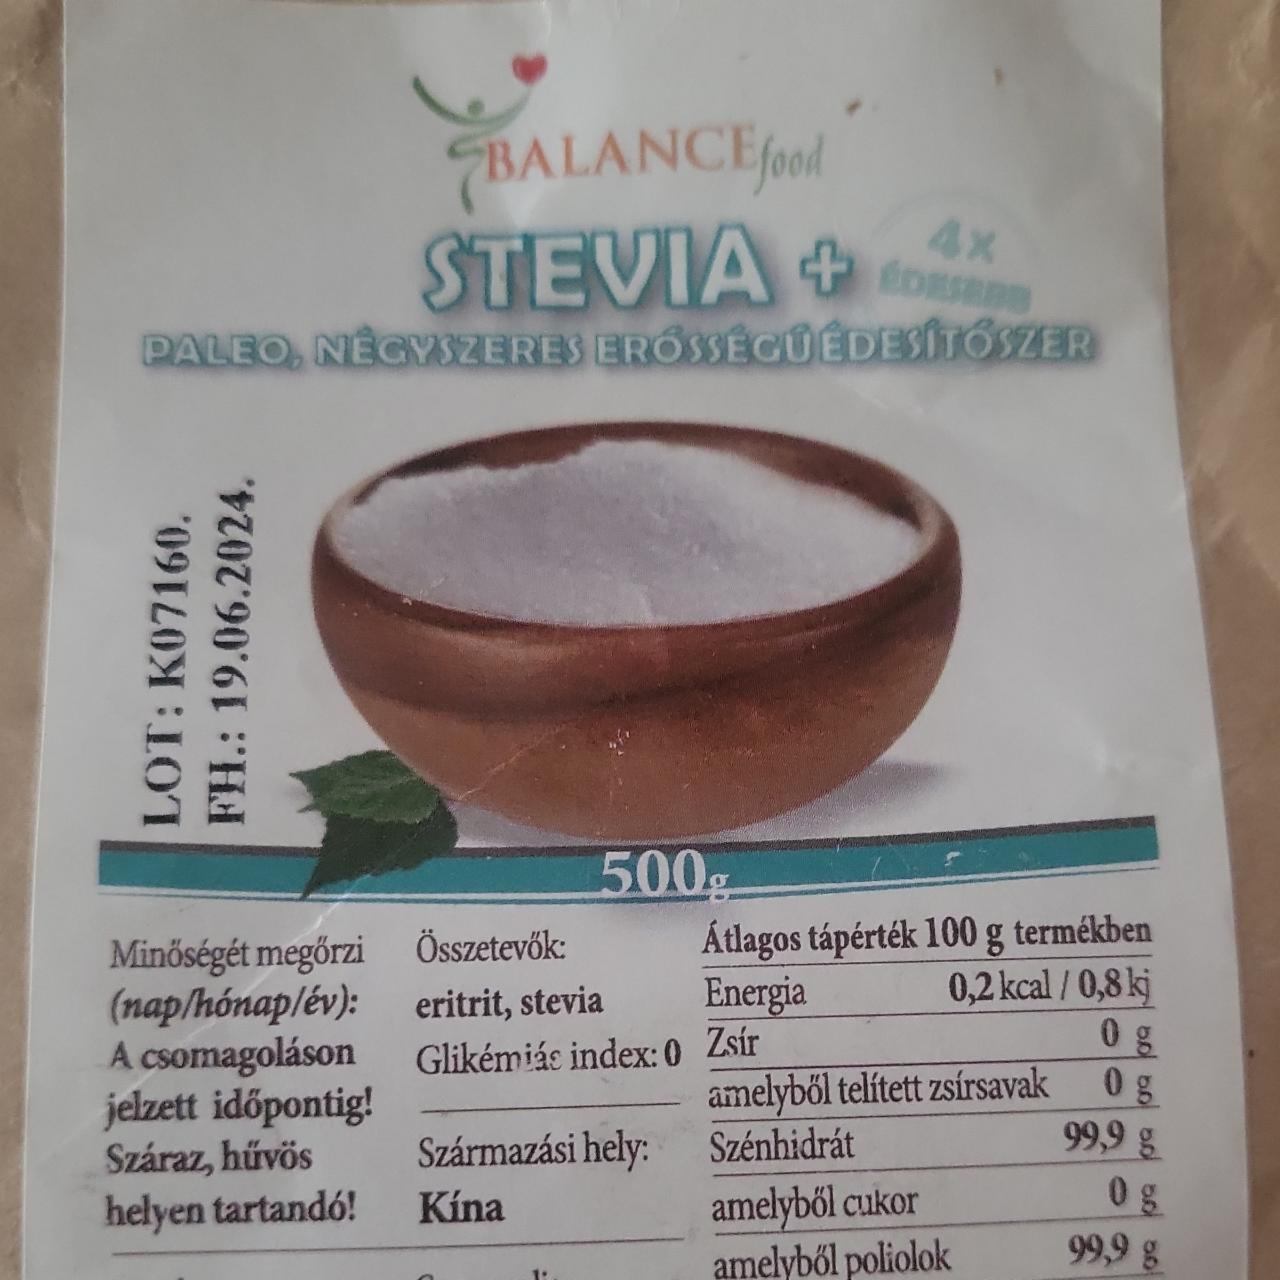 Képek - Stevia+ Balance food